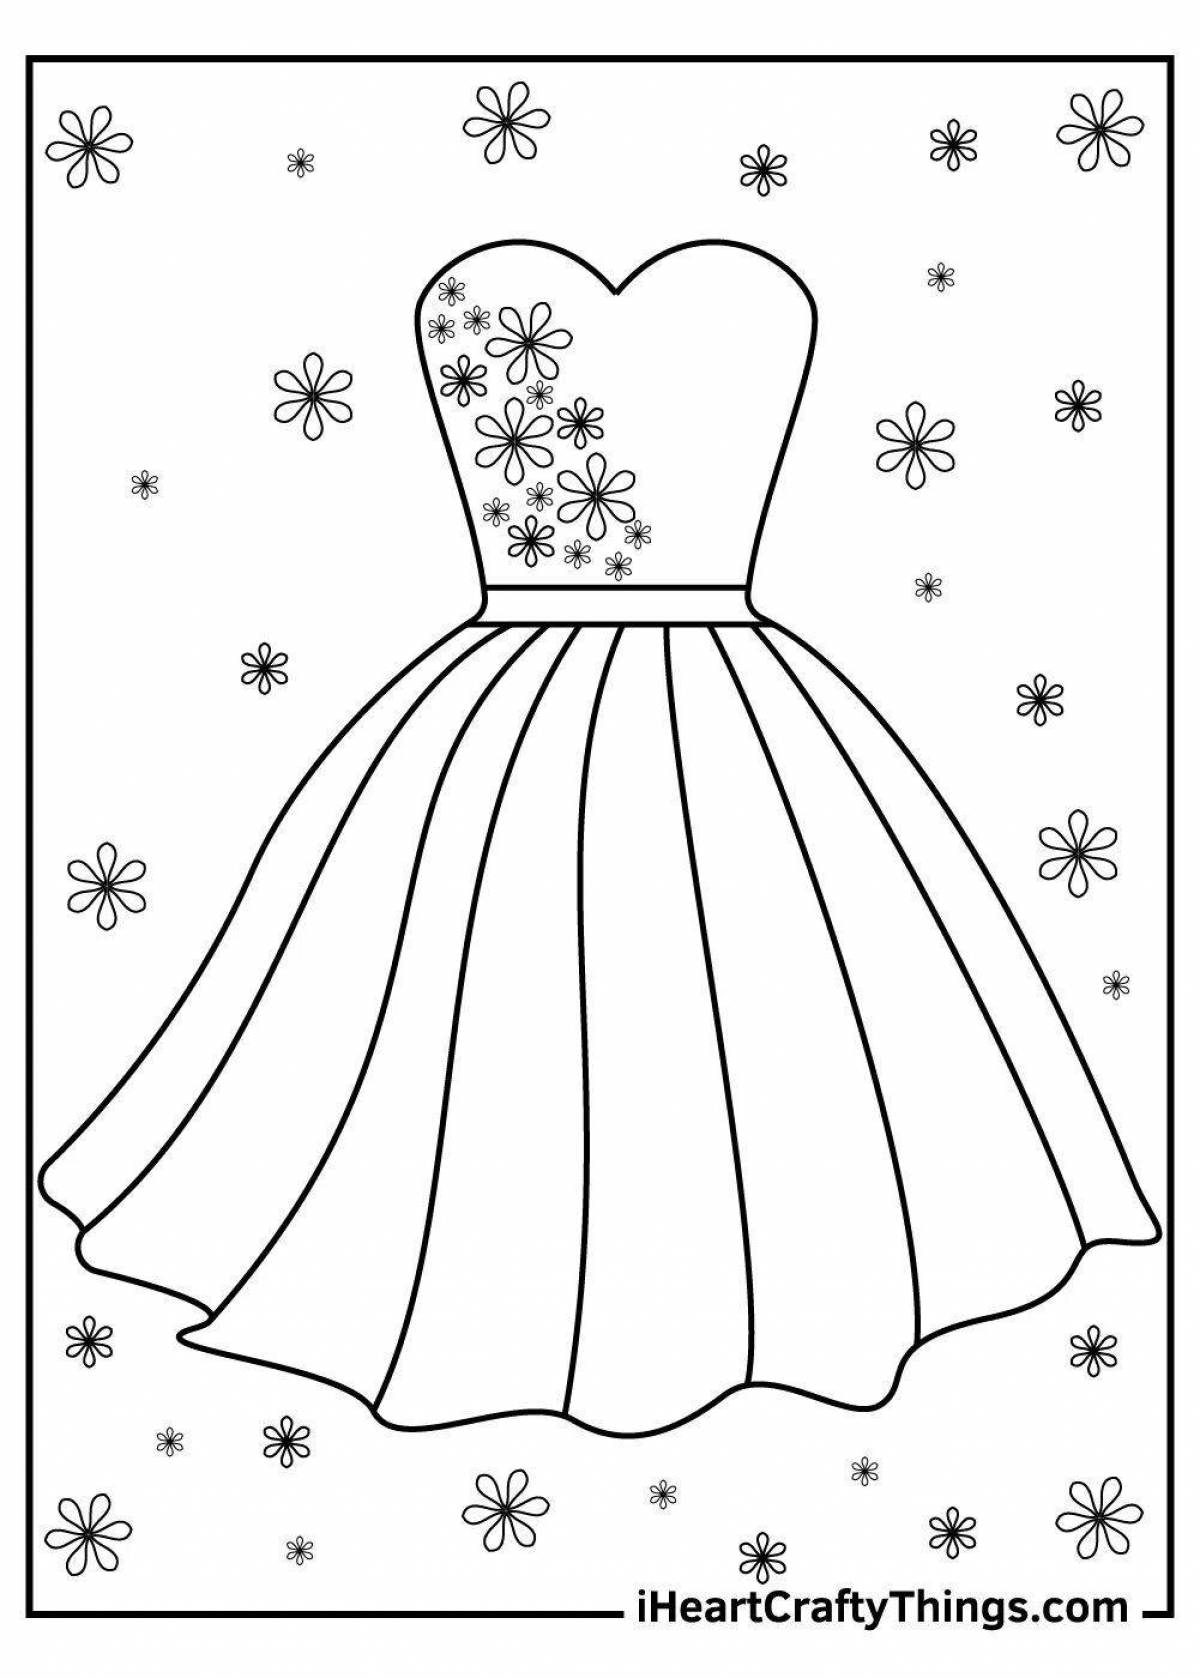 Раскраска блестящее платье для детей 2-3 лет